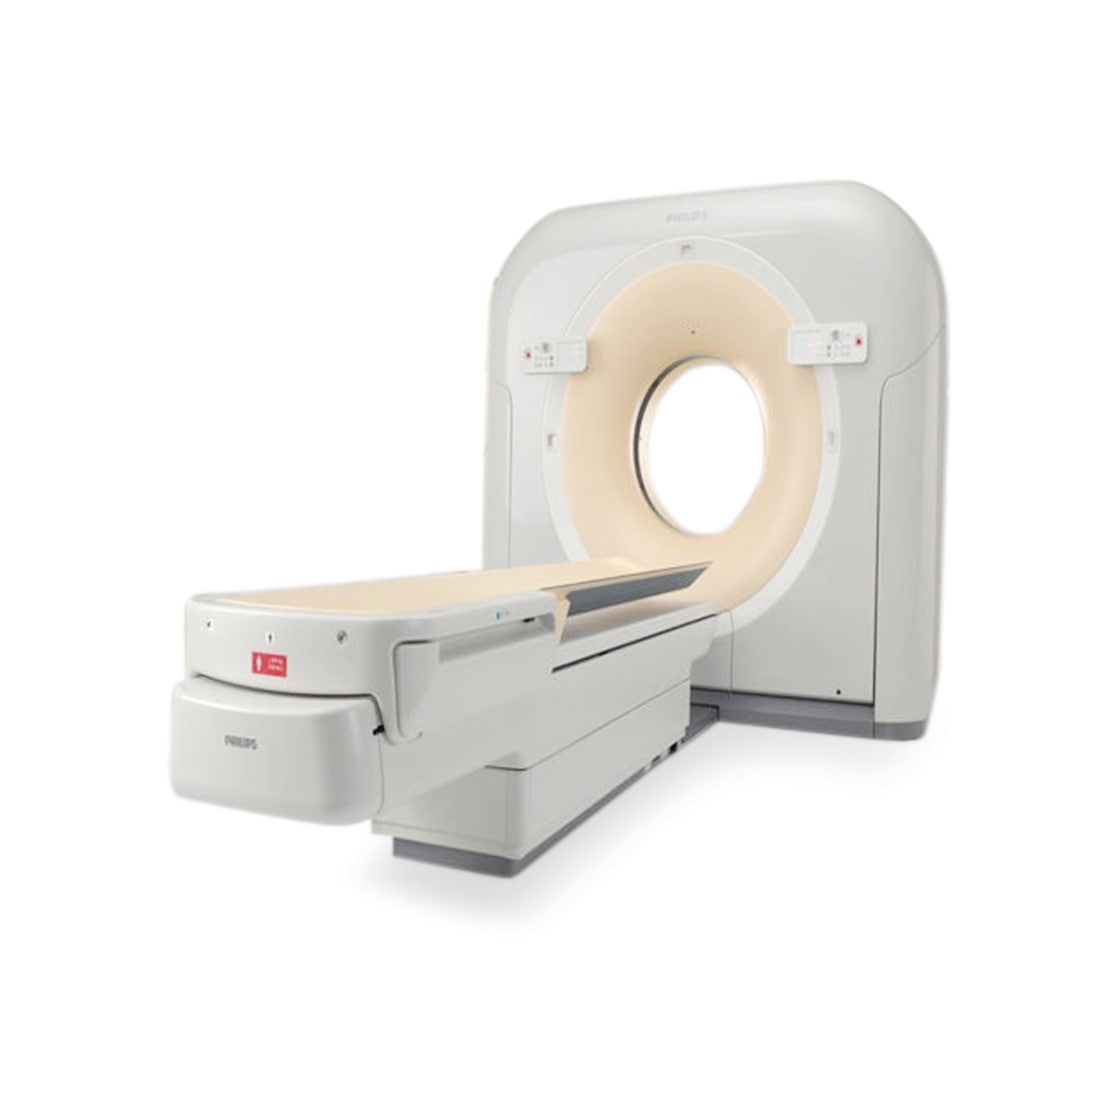 Philips Brilliance 16 Slice CT Scanner